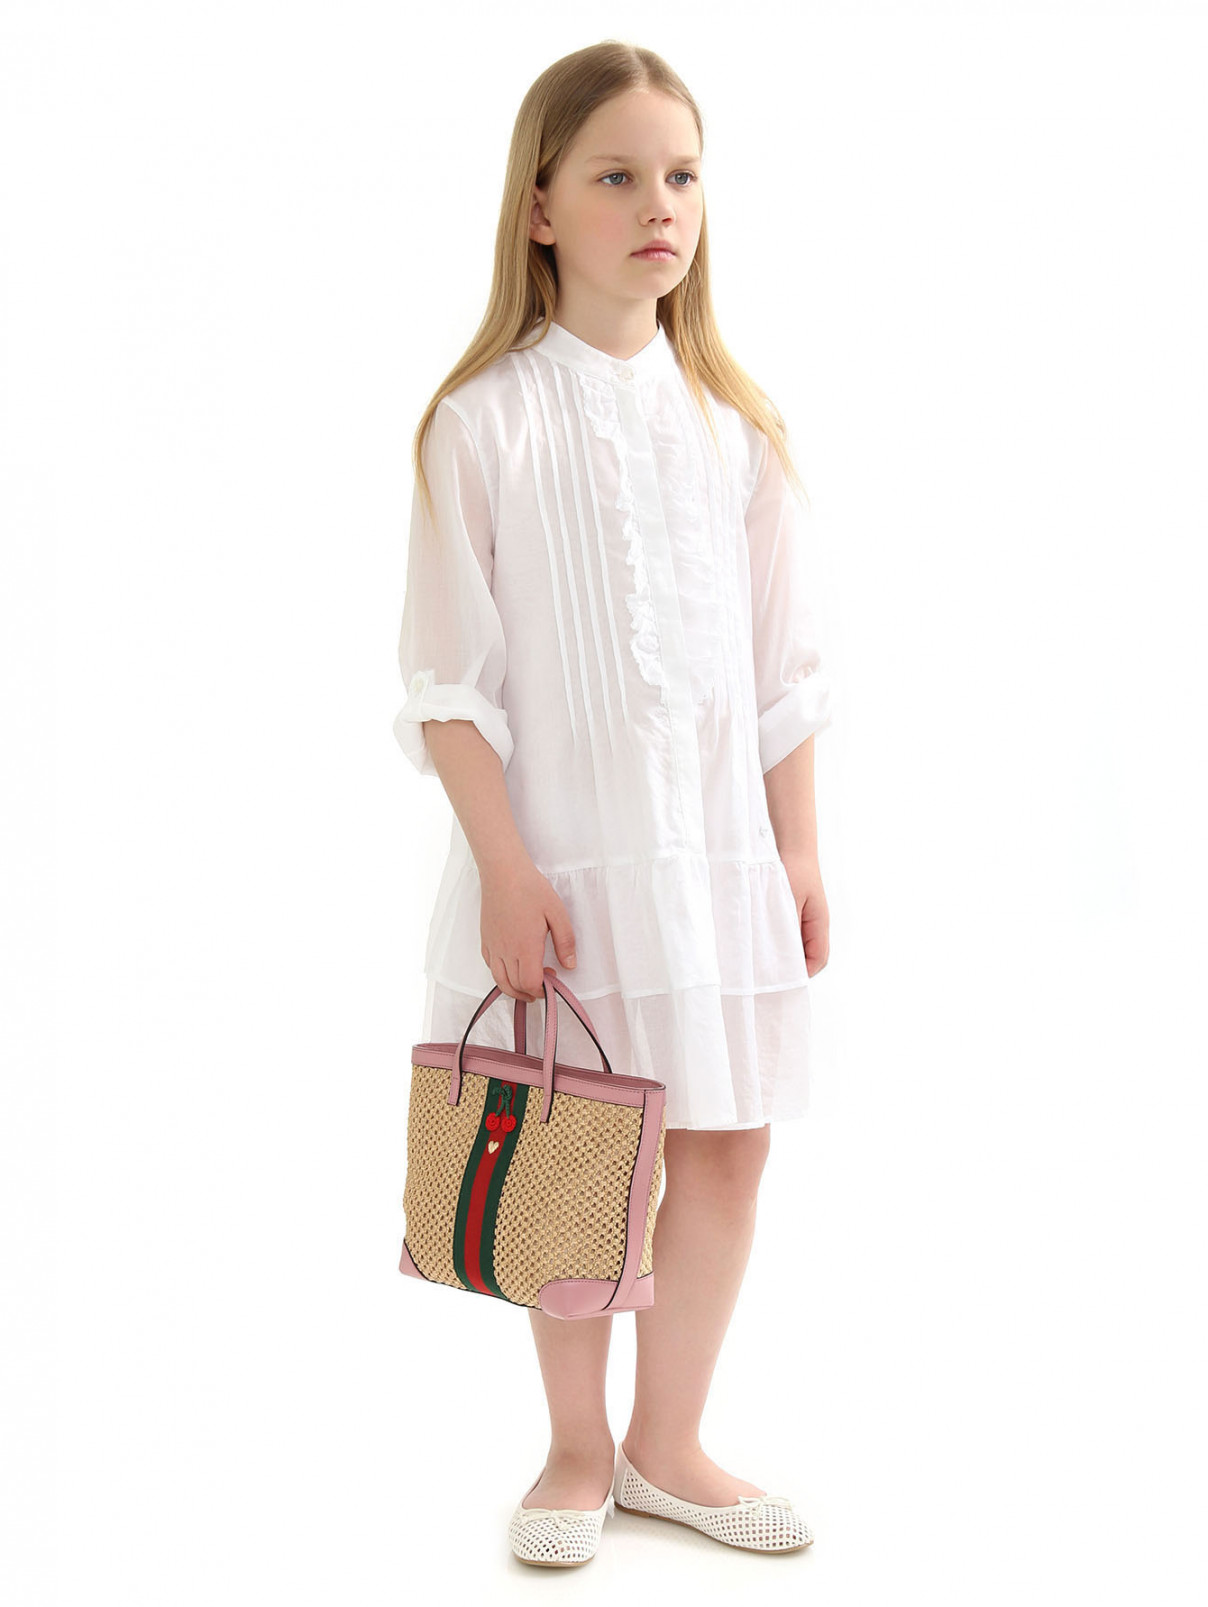 Плетеная сумка на коротких ручках Gucci  –  Модель Общий вид  – Цвет:  Бежевый